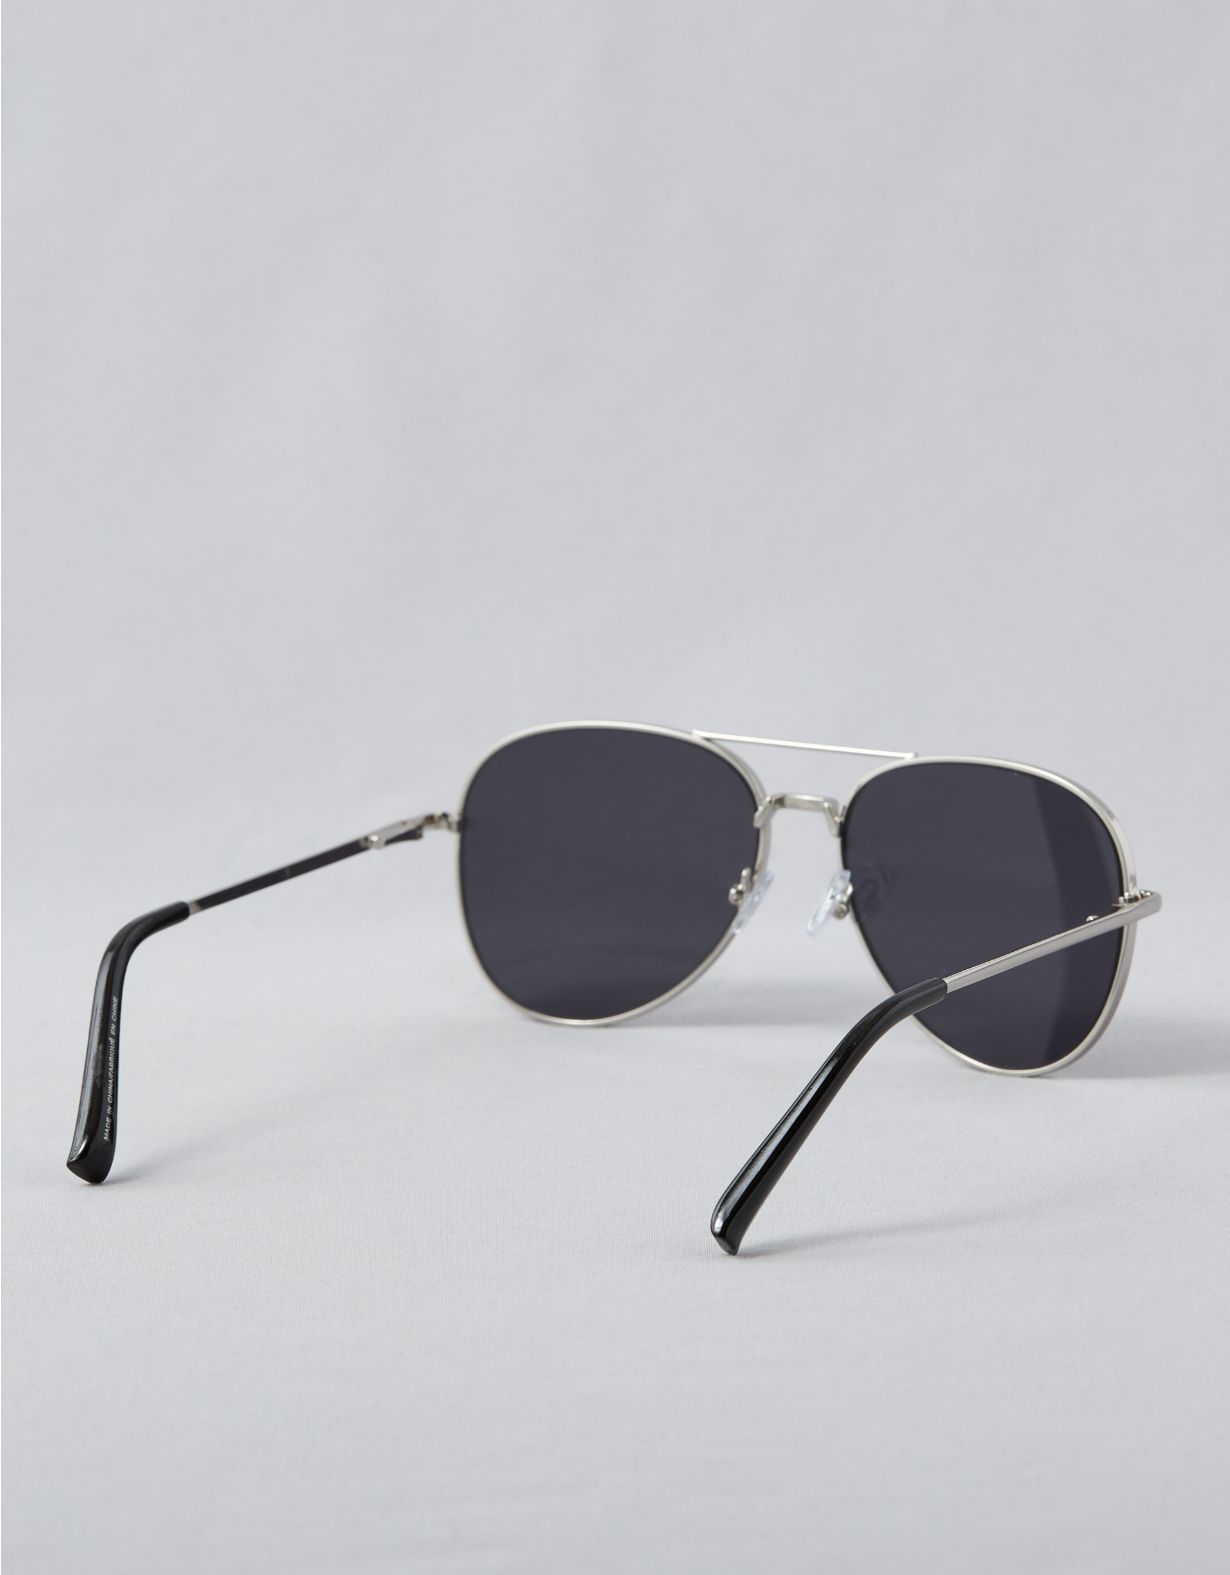 AEO Silver Sunglasses